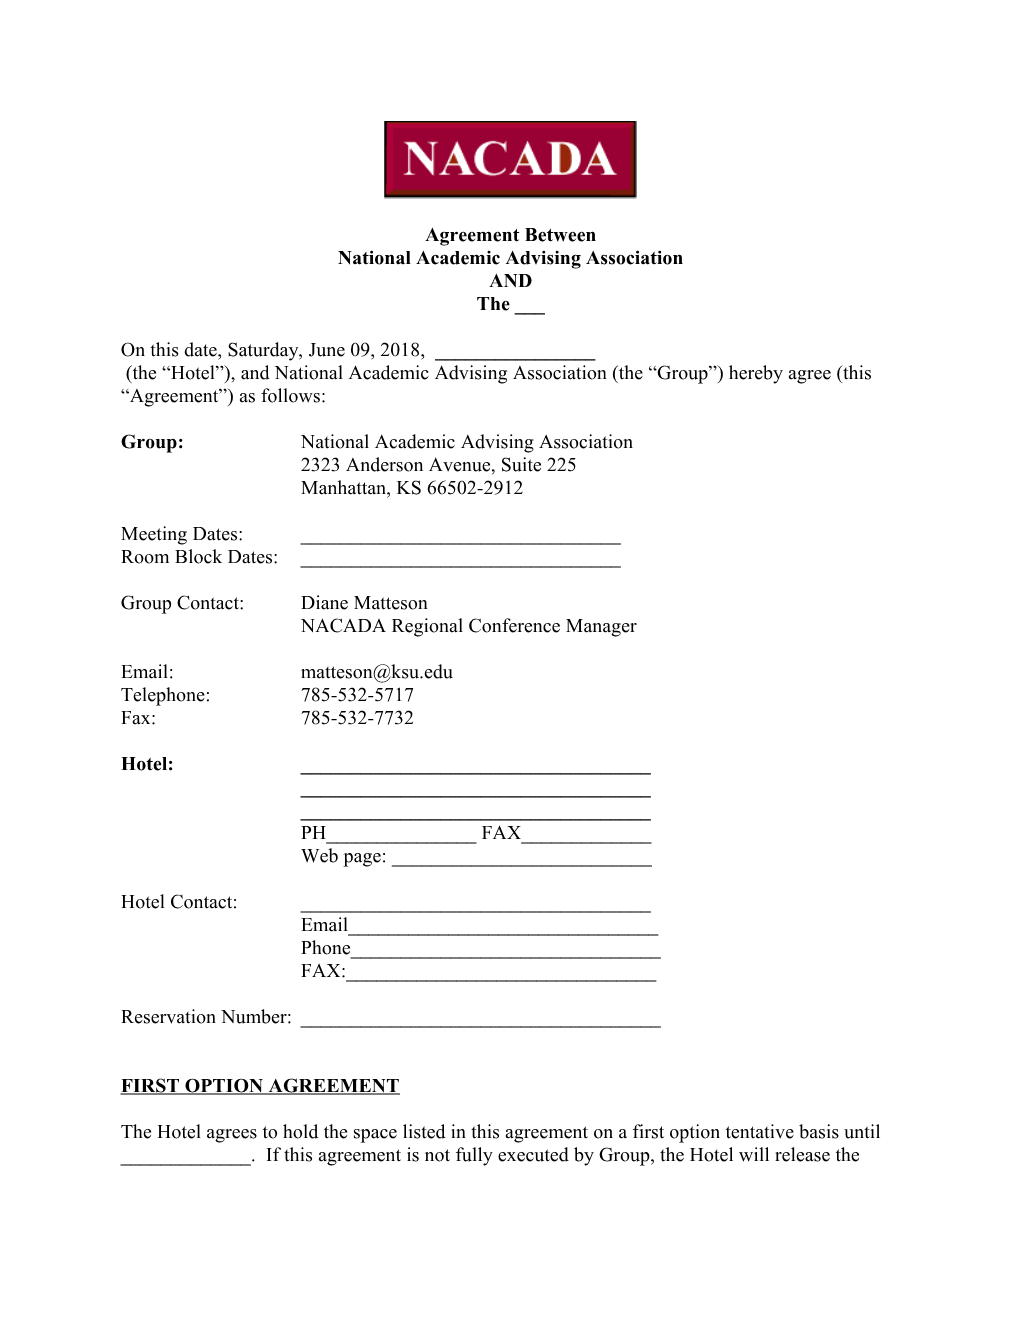 NACADA Contract Clauses